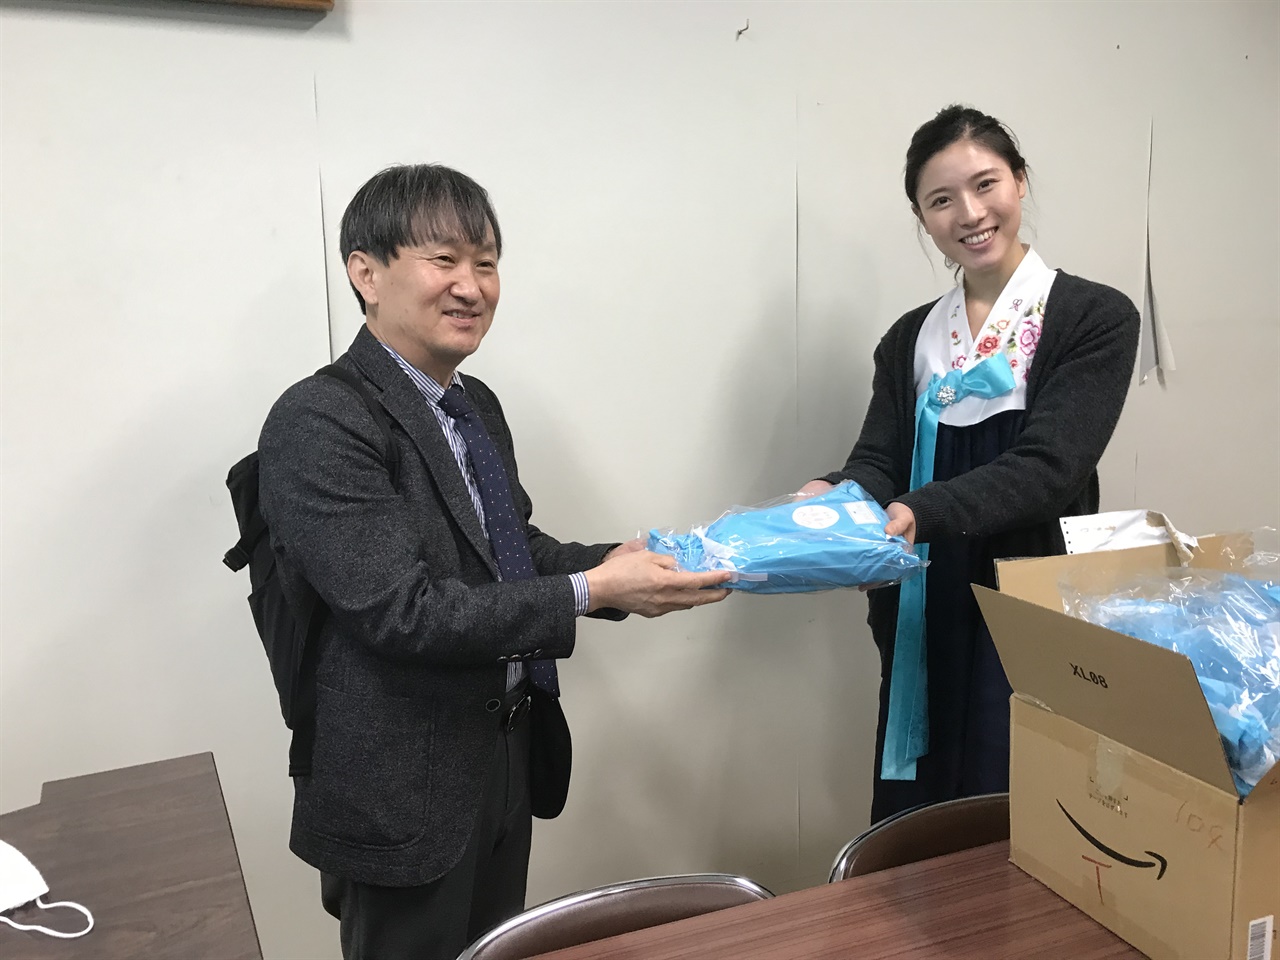 2020년 3월1일 이인형 전 팀아이 회장이 고베조선고급학교 무용부 지도교사에게 첫 무용신 선물을 전달하고 있다.